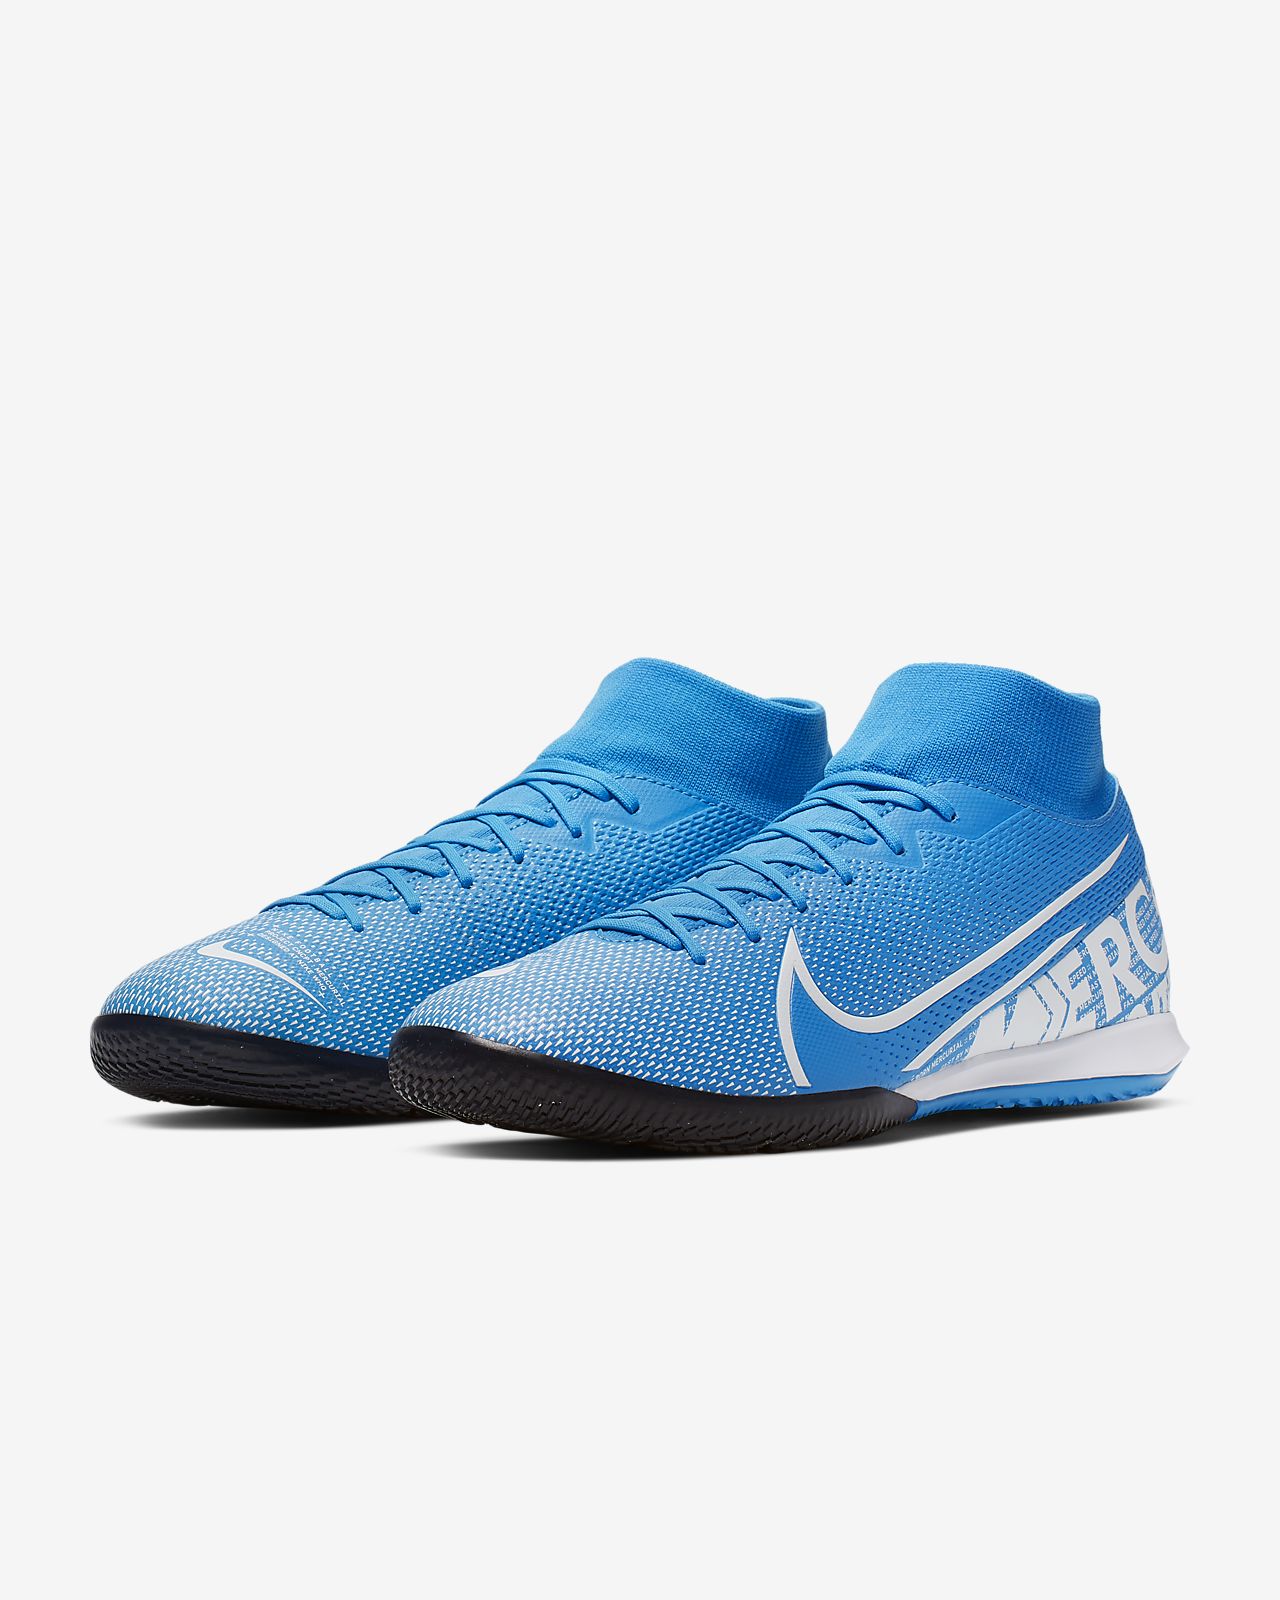 Nike SuperflyX 6 Academy Mens Indoor Soccer Shoe